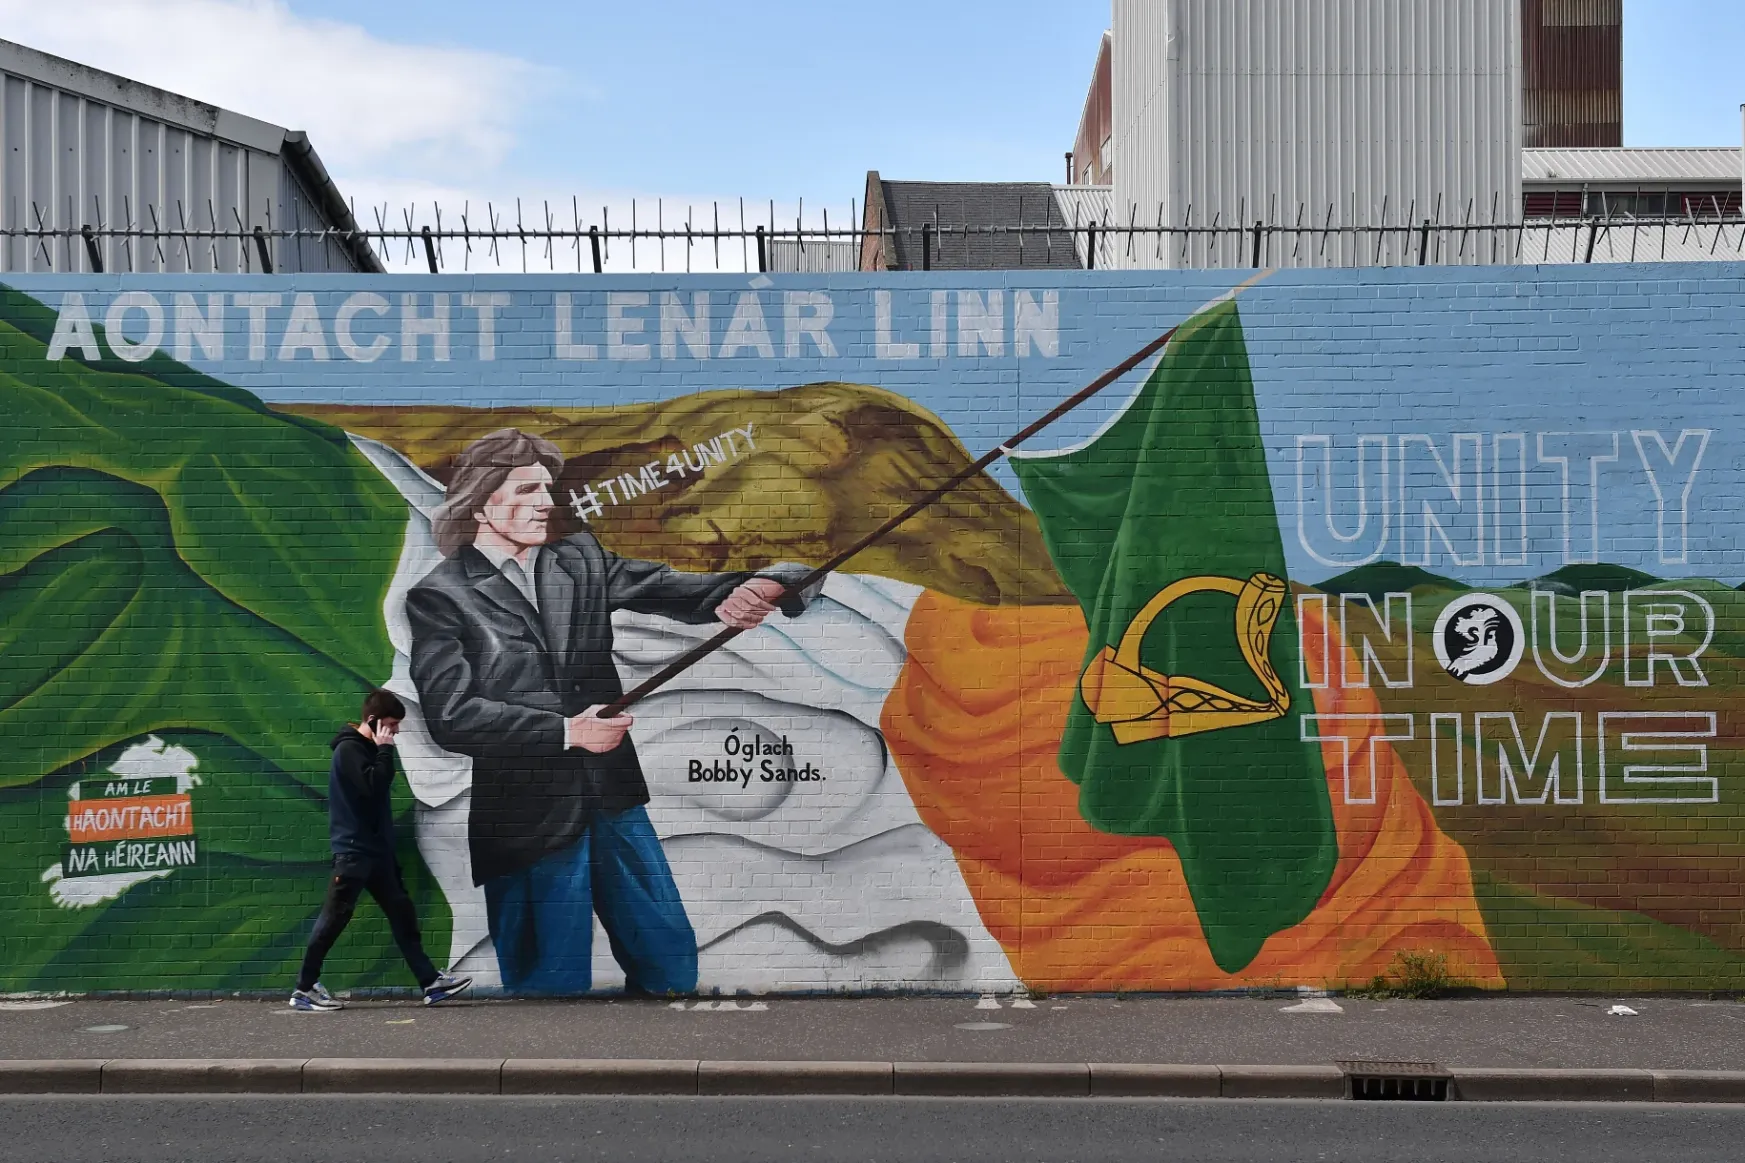 A britellenes Sinn Féin győzelmével közelebb került, de még mindig távol az egyesült Írország